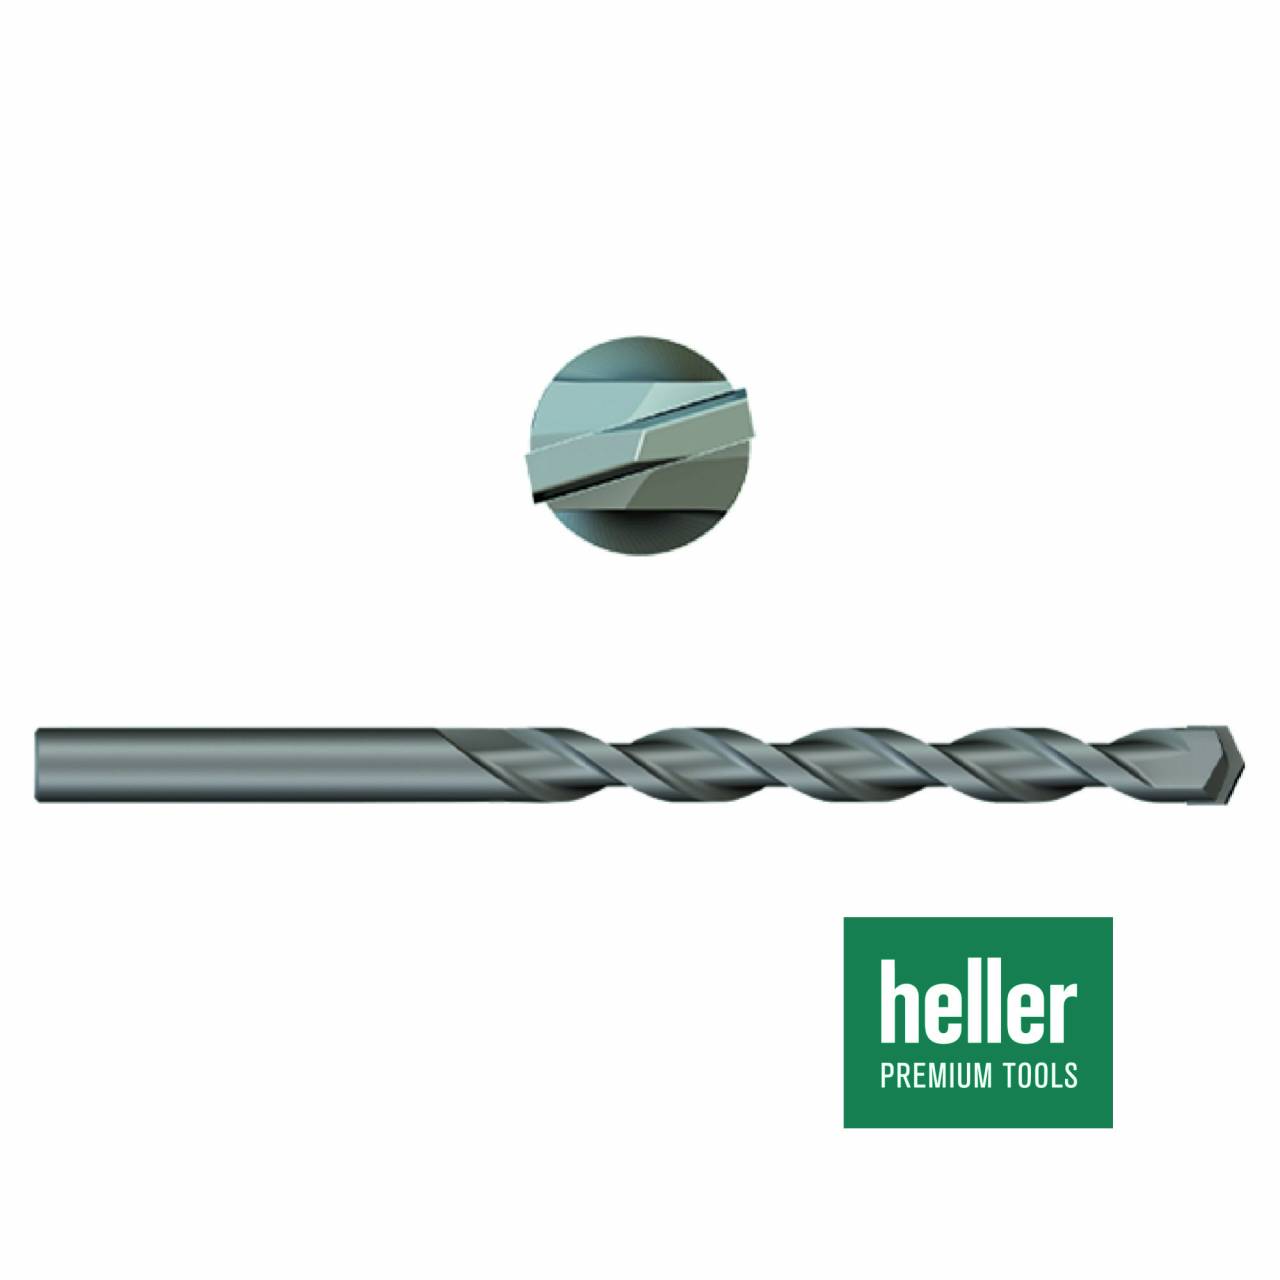 Betonbohrer 'Heller®' Ø 10 x 80 x 120 mm